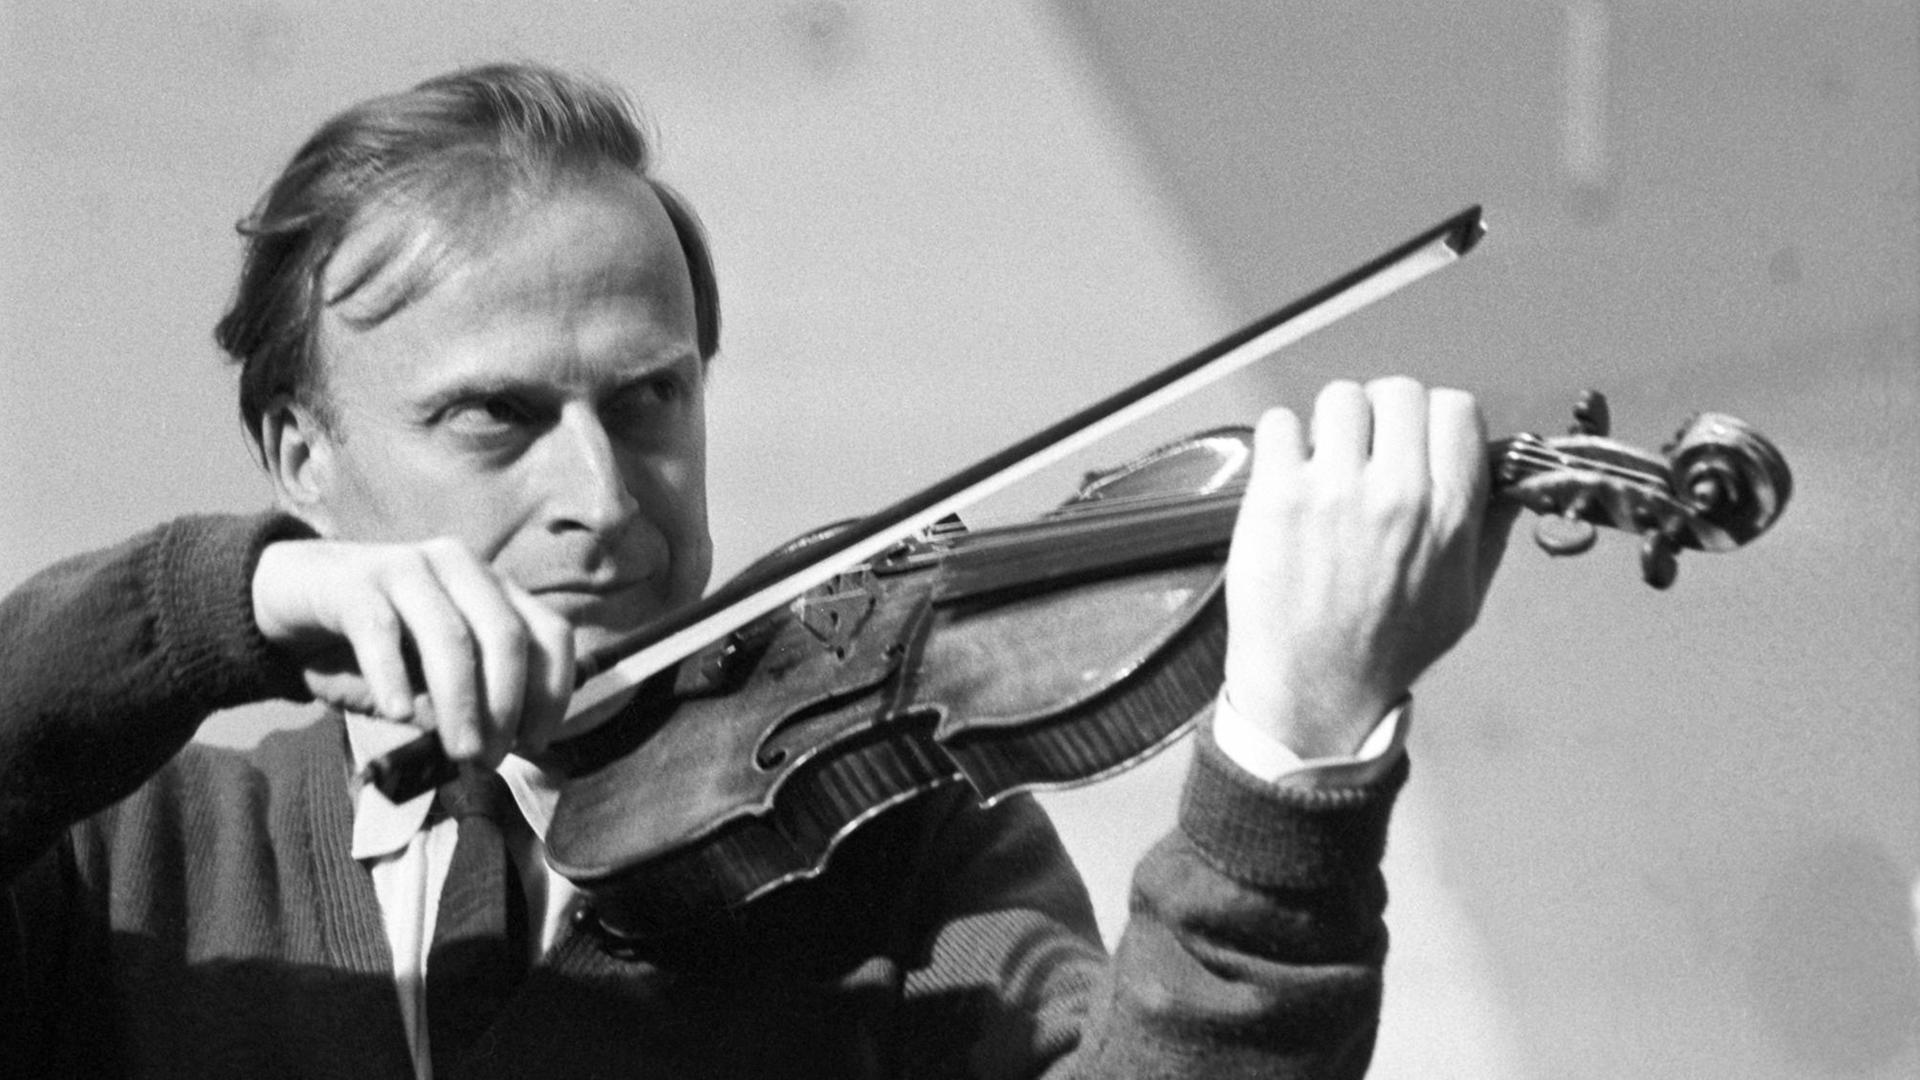 Der weltberühmte Geiger Jehudi Menuhin während eines Konzerts gemeinsam mit dem erweiterten Zürcher Kammerorchester am 30.03.1963 in der Jahrhunderthalle in Frankfurt-Höchst.